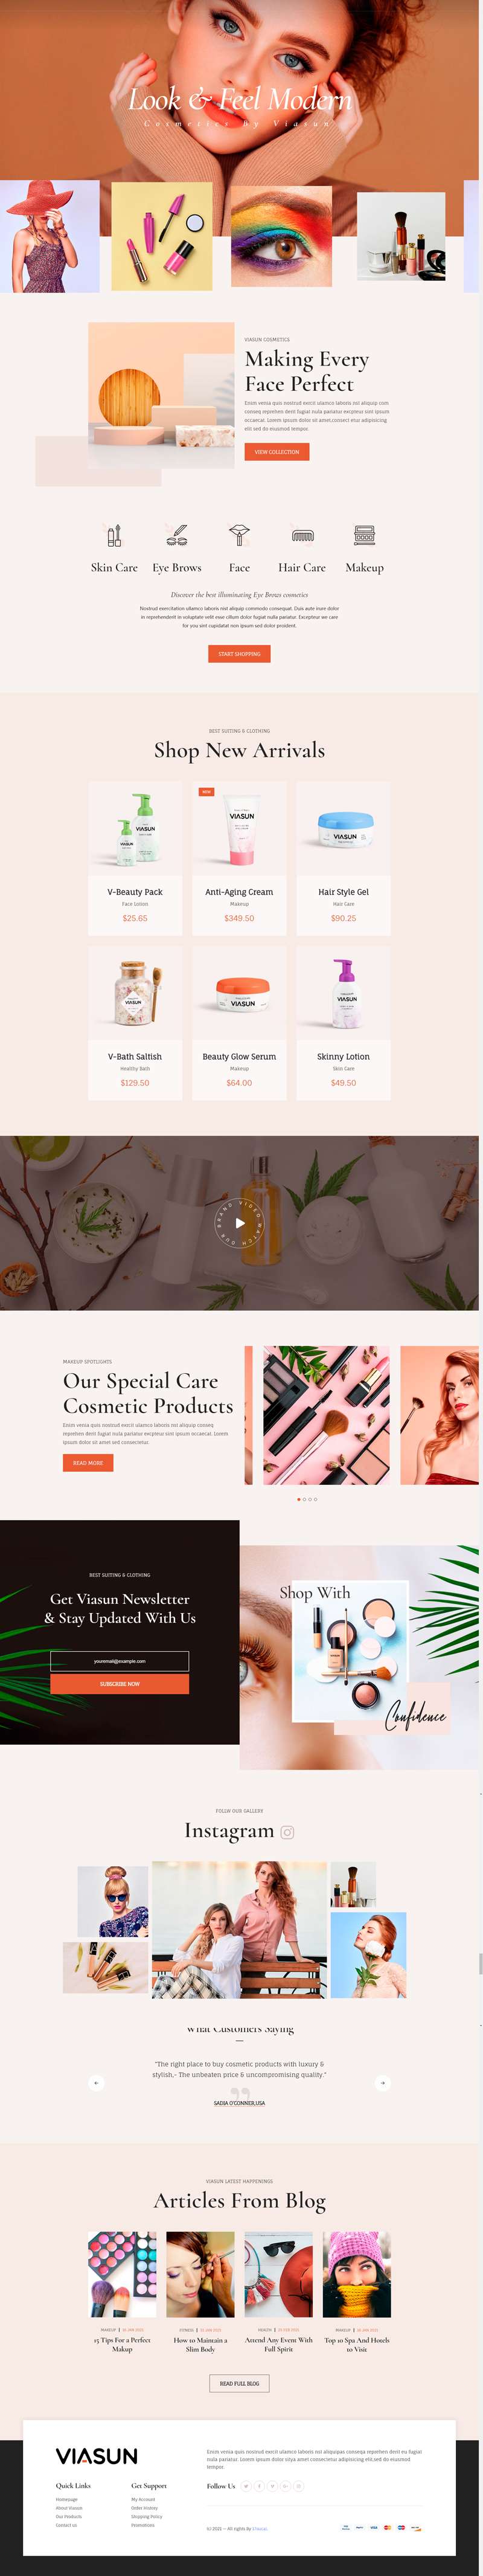 化妆品网页设计模板，HTML化妆品购物商城网站源码